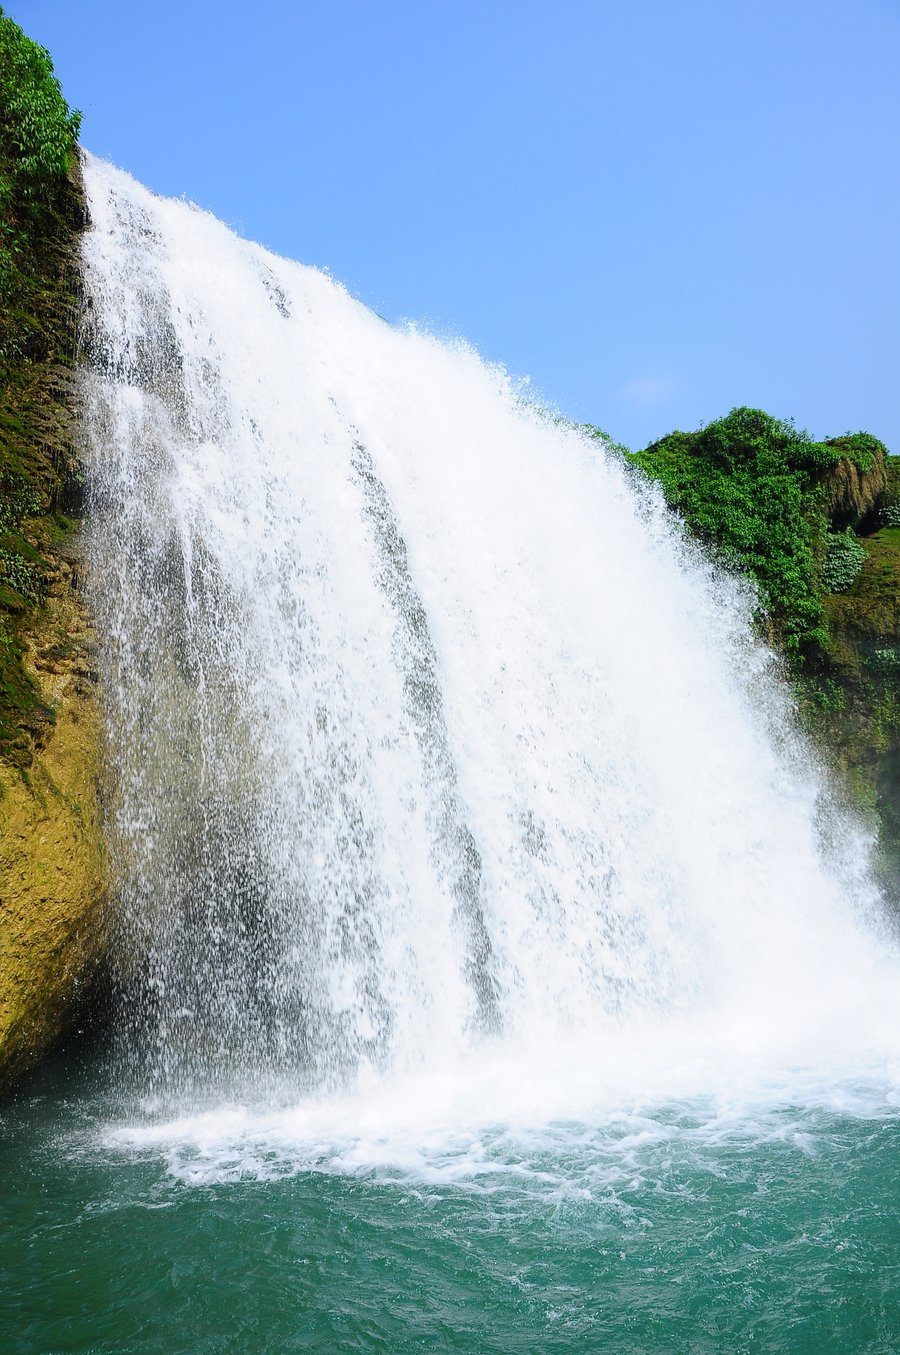 瀑布图片瀑布是地球上很壮美的自然景观